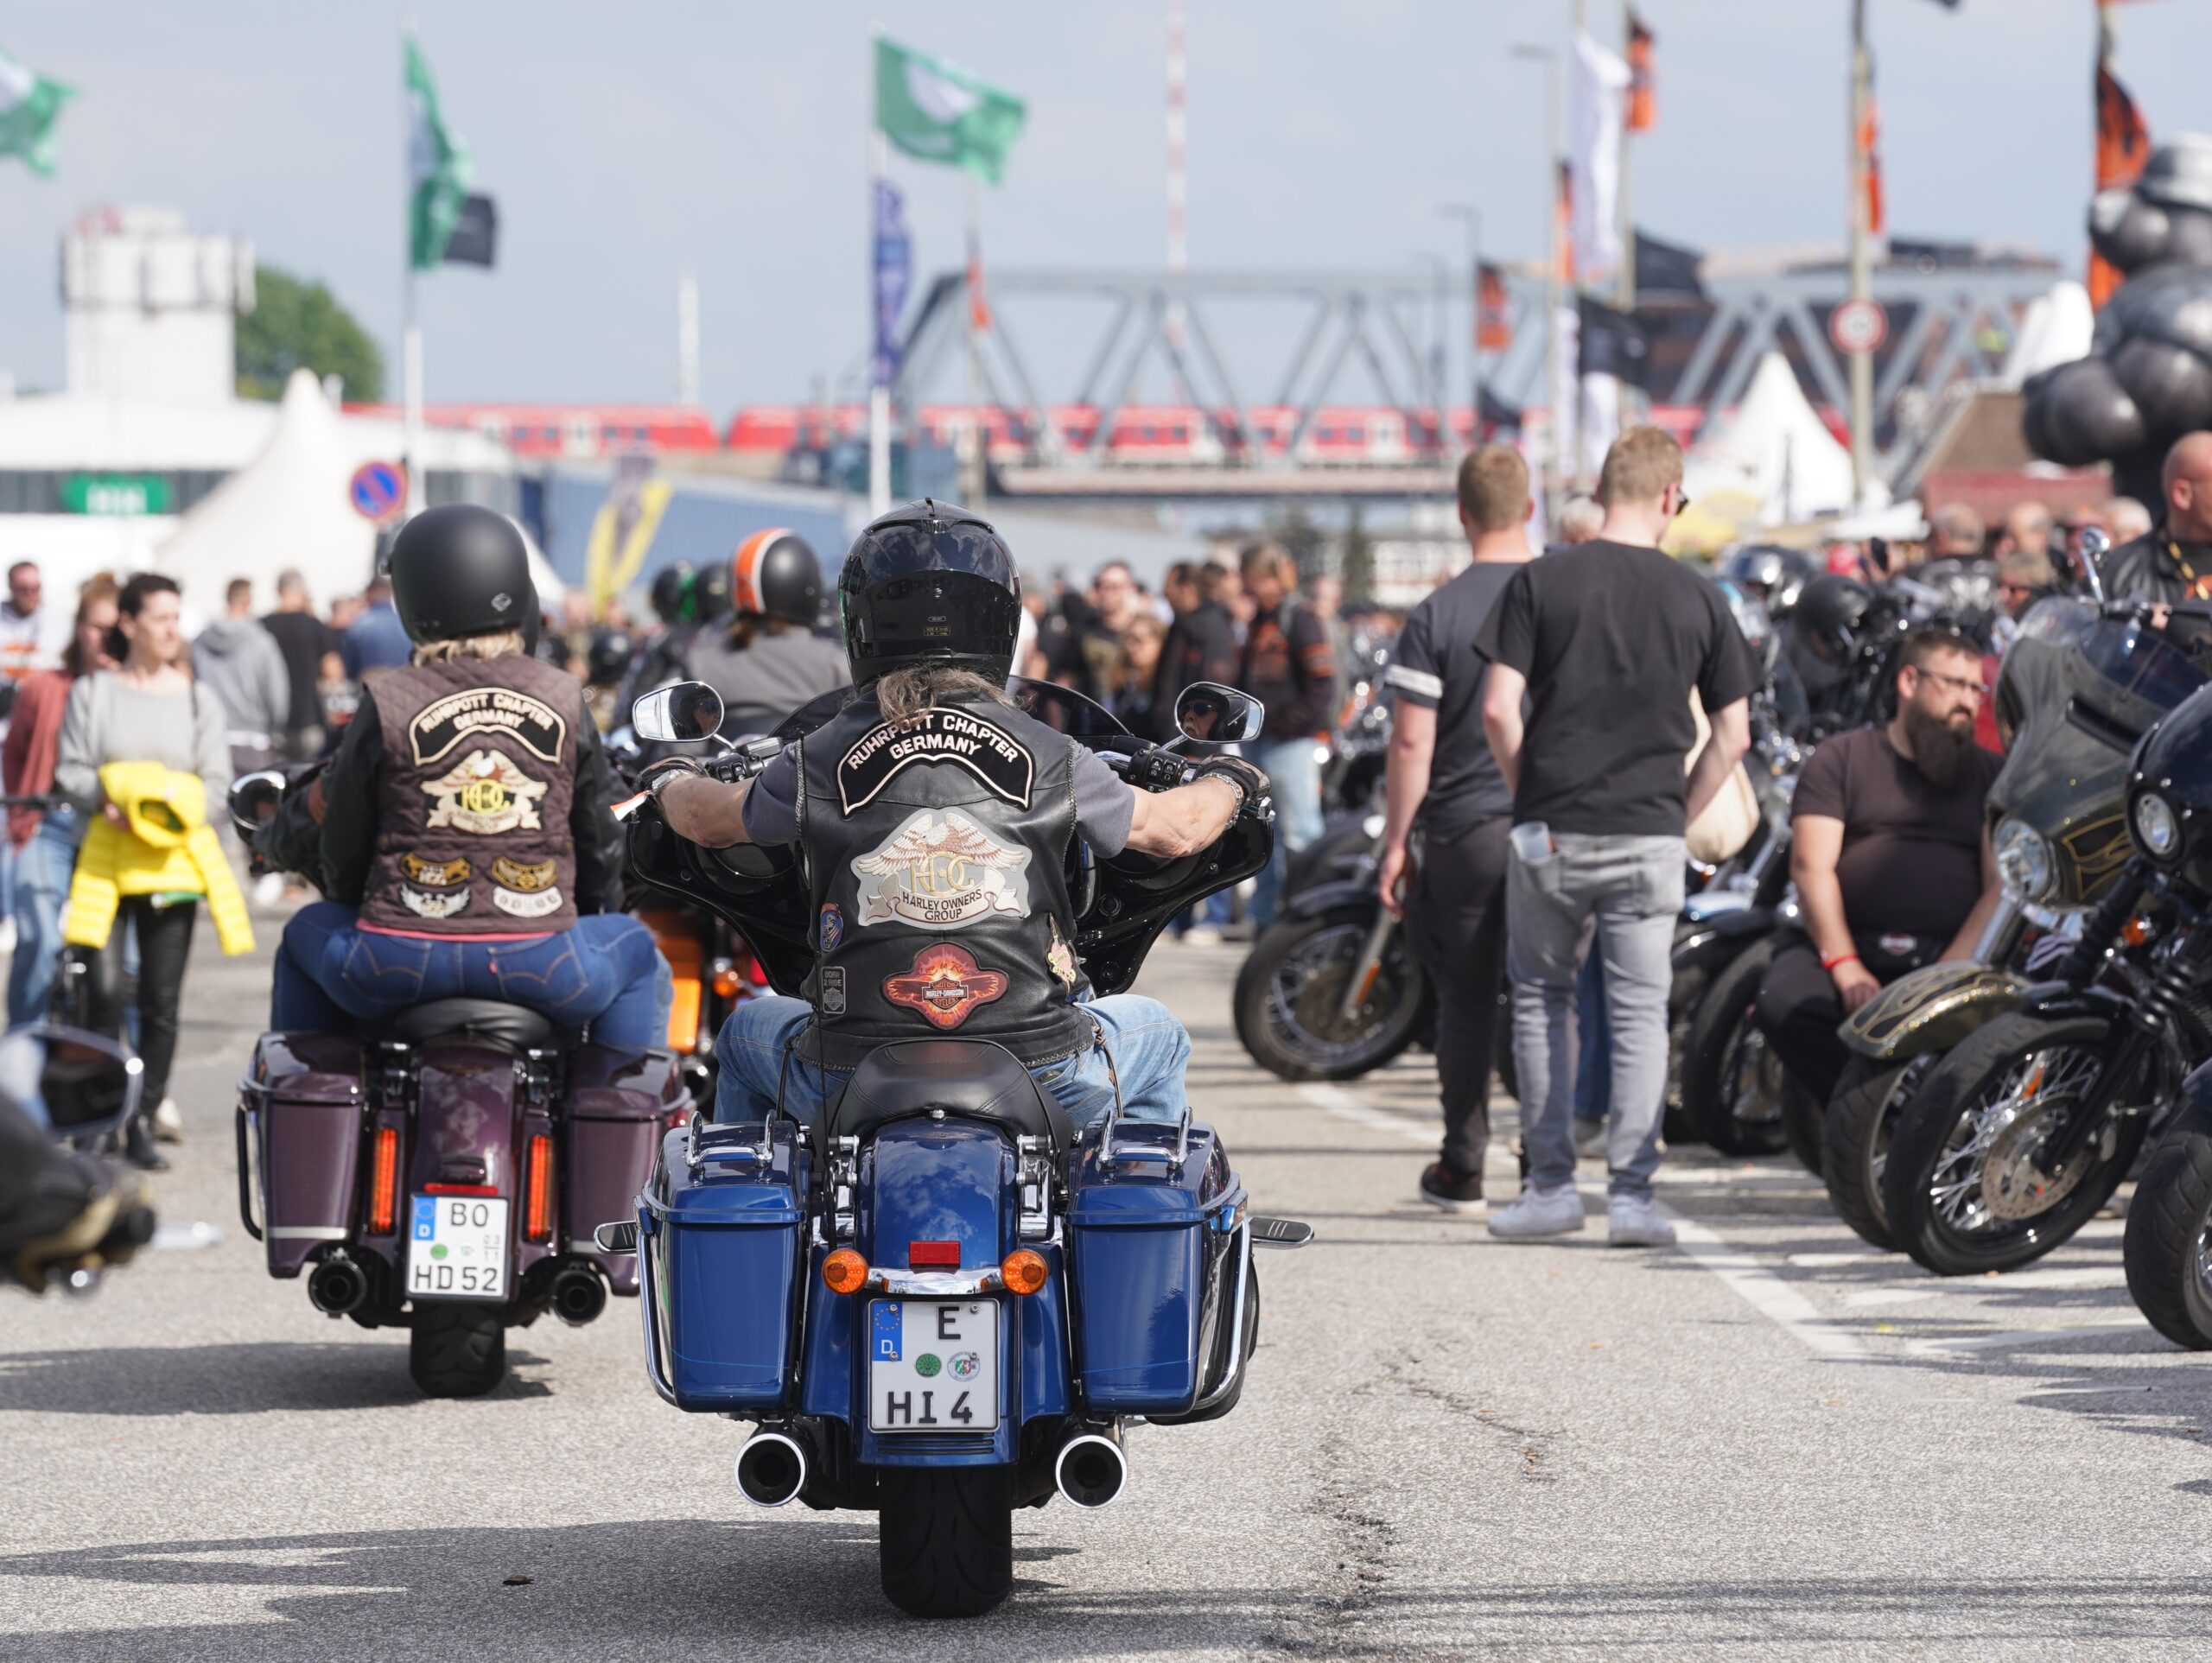 Aufnahme von fahrenden Motorrädern auf dem Veranstaltungsgelände.